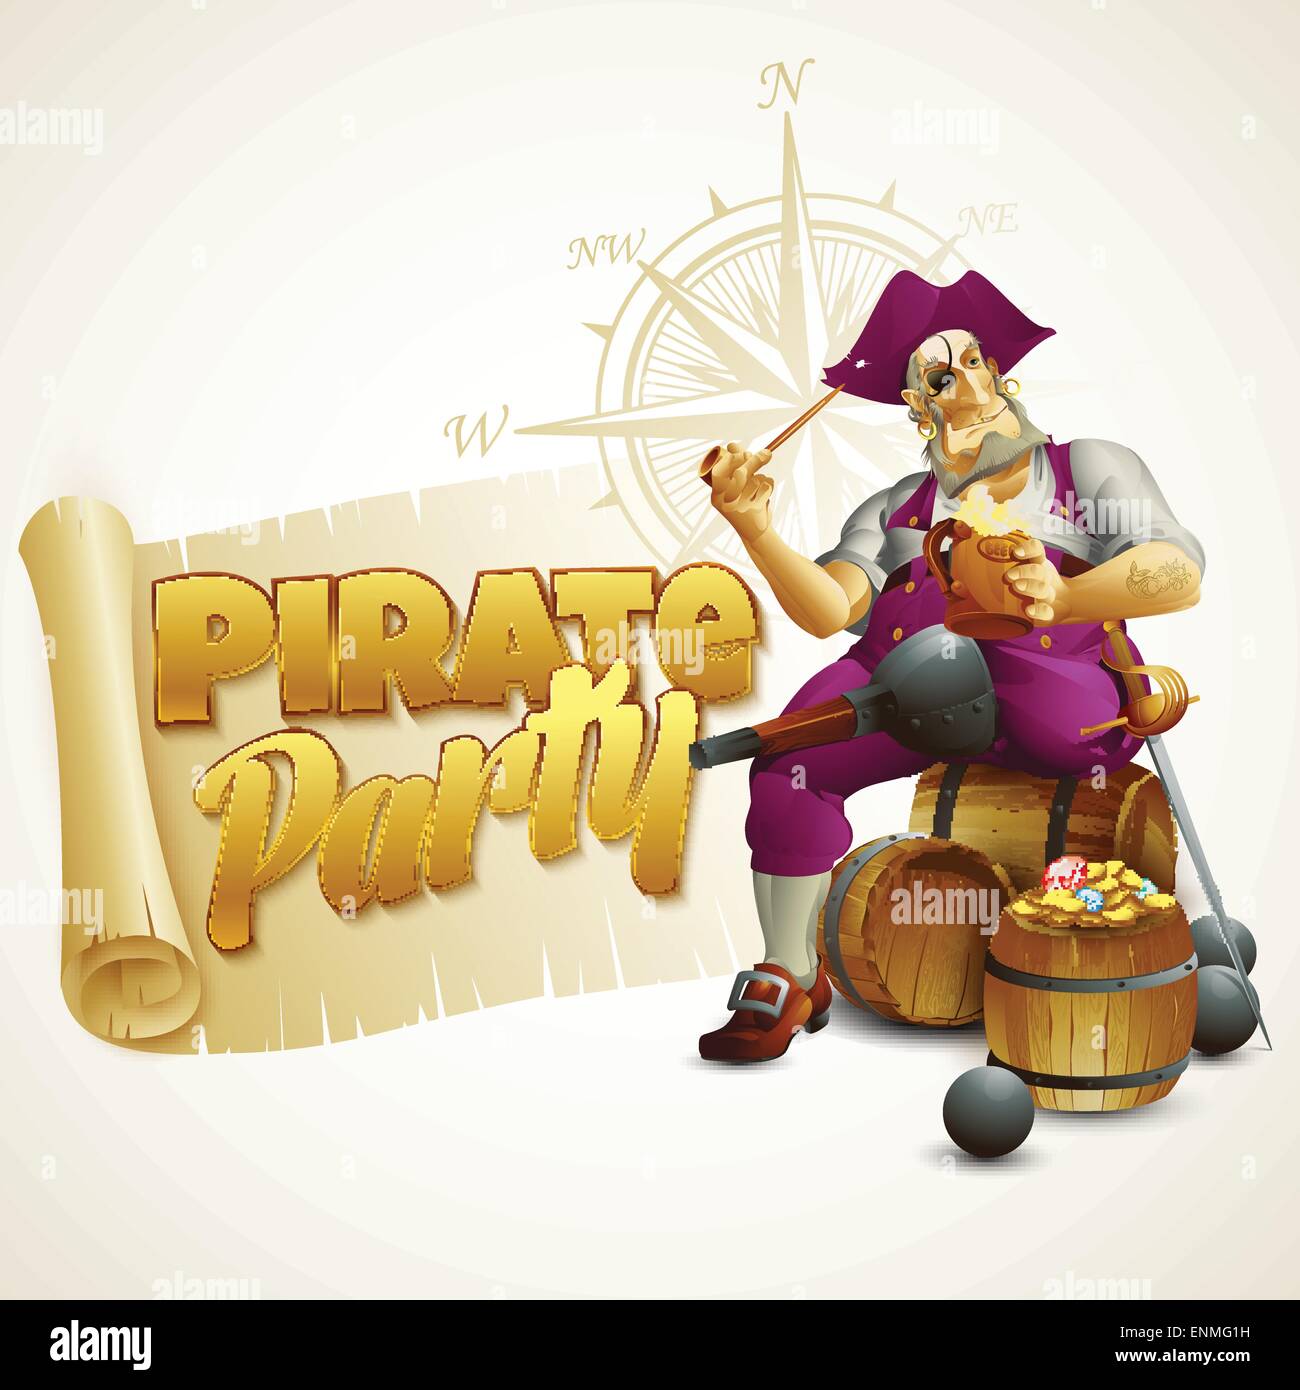 Piraten Partei Plakat. Vektor-Illustration EPS 10 Stock Vektor